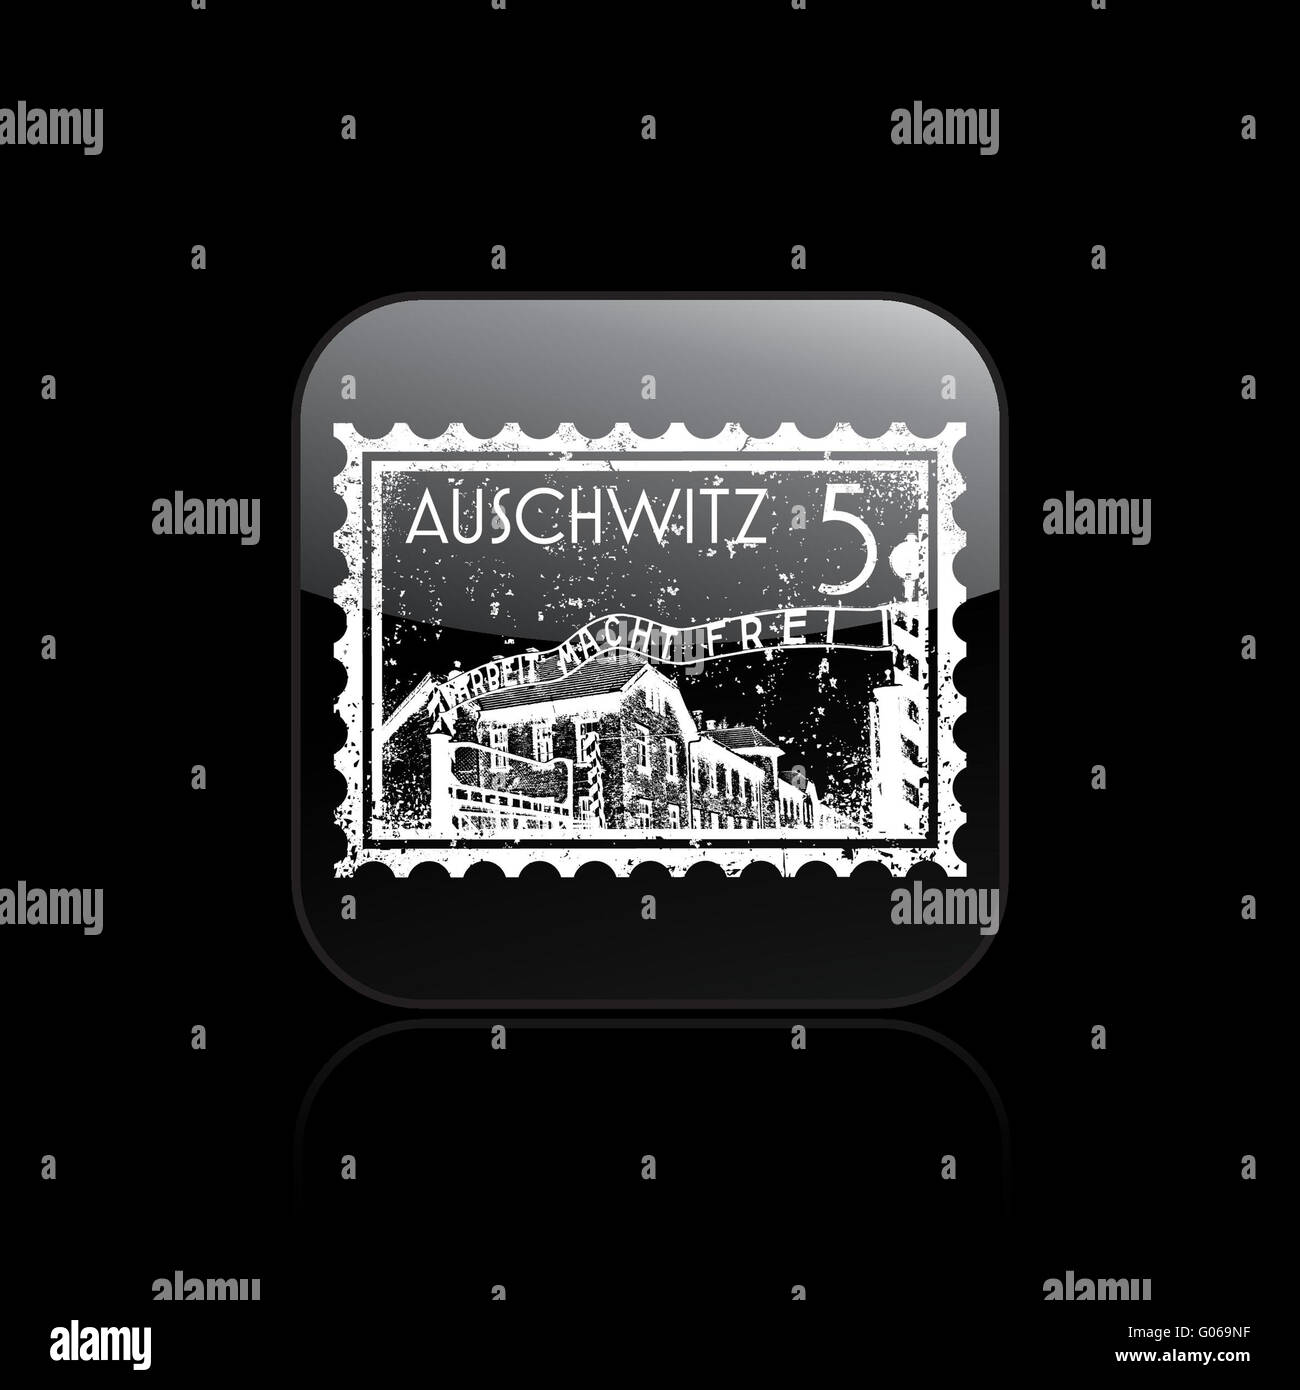 Vector illustration de l'icône unique auschwitz Banque D'Images